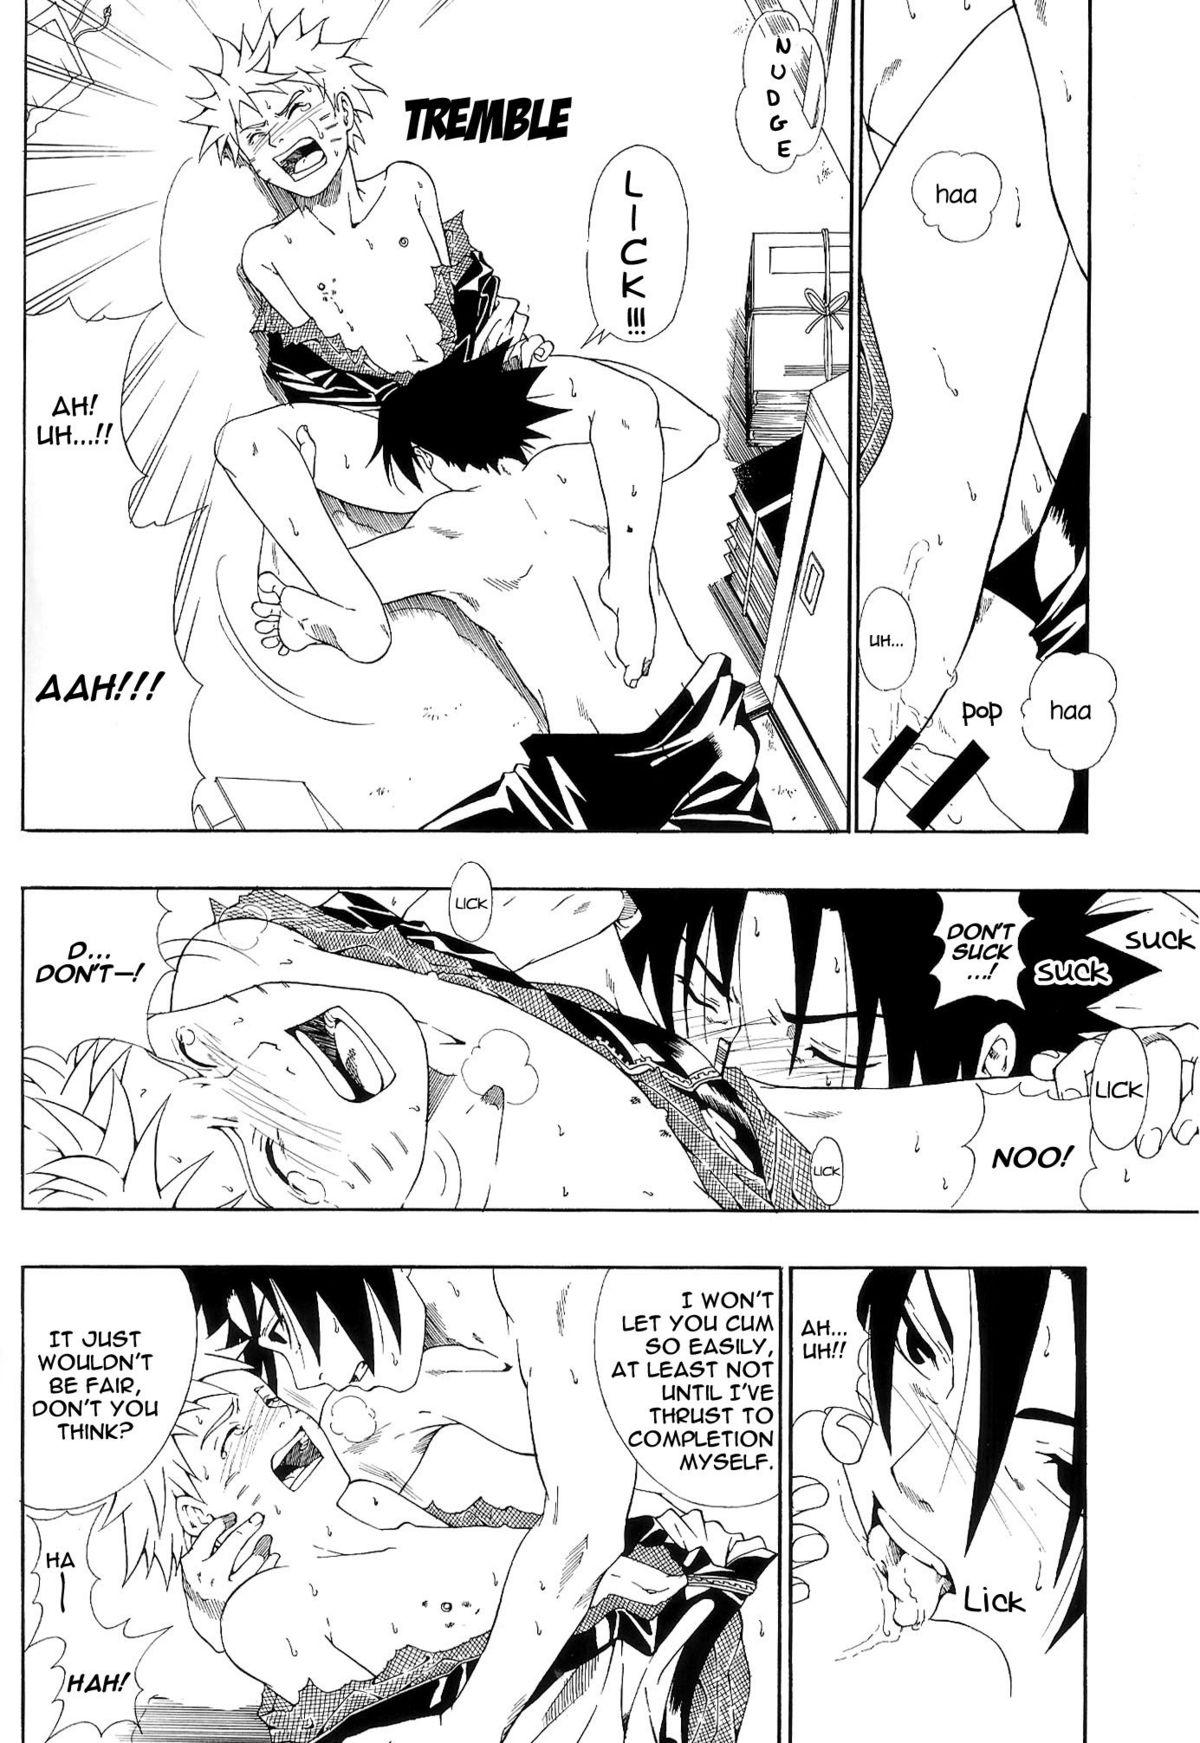 Taboo ERO ERO²: Volume 1.5 (NARUTO) [Sasuke X Naruto] YAOI -ENG- - Naruto Straight Porn - Page 9